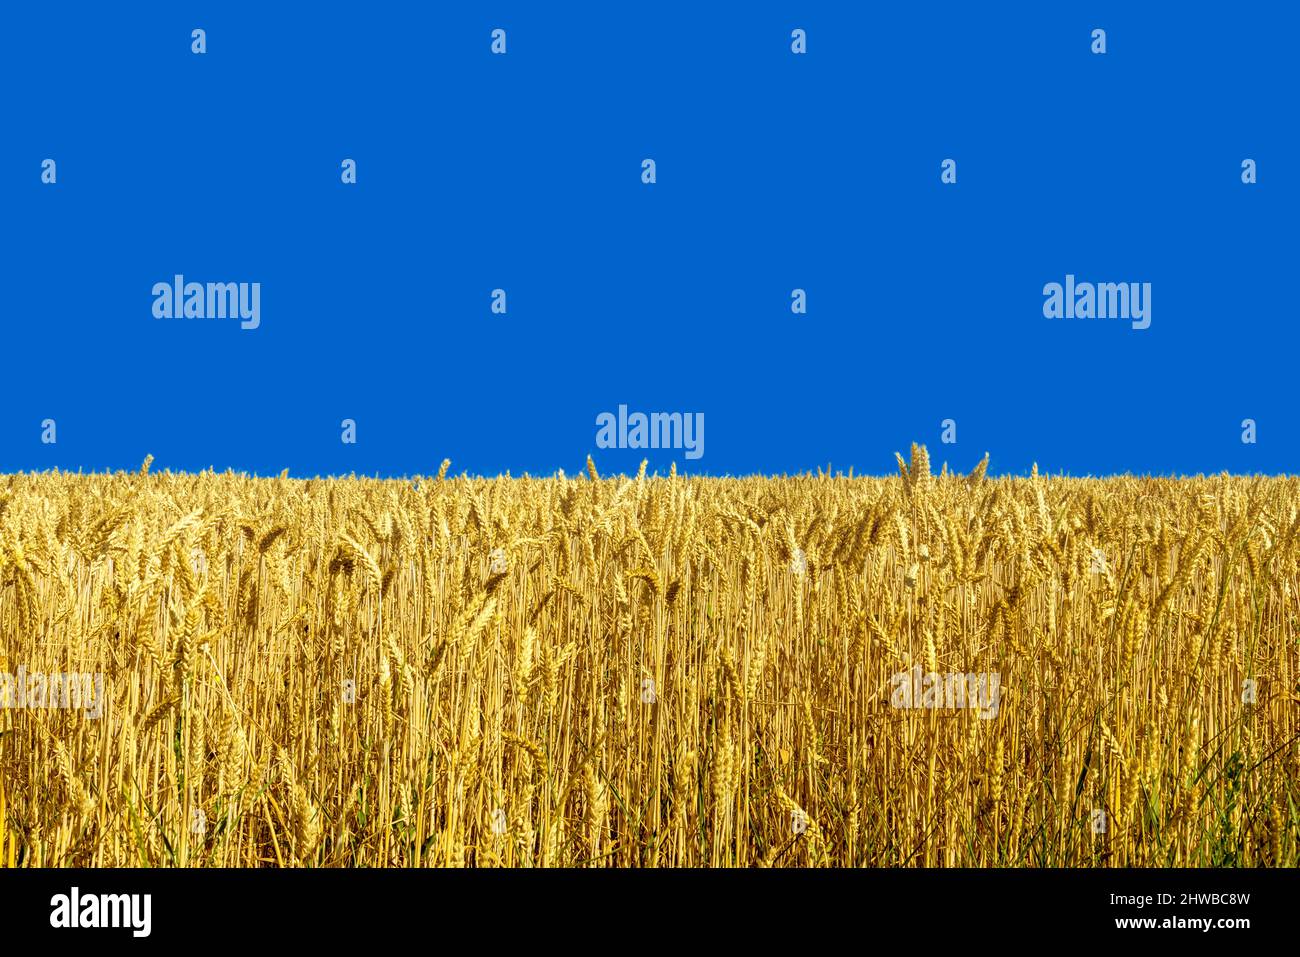 Gelbes Weizenfeld am blauen Himmel, Farben, die die Flagge der Ukraine inspirierten, Symbole für Frieden und Wohlstand Stockfoto